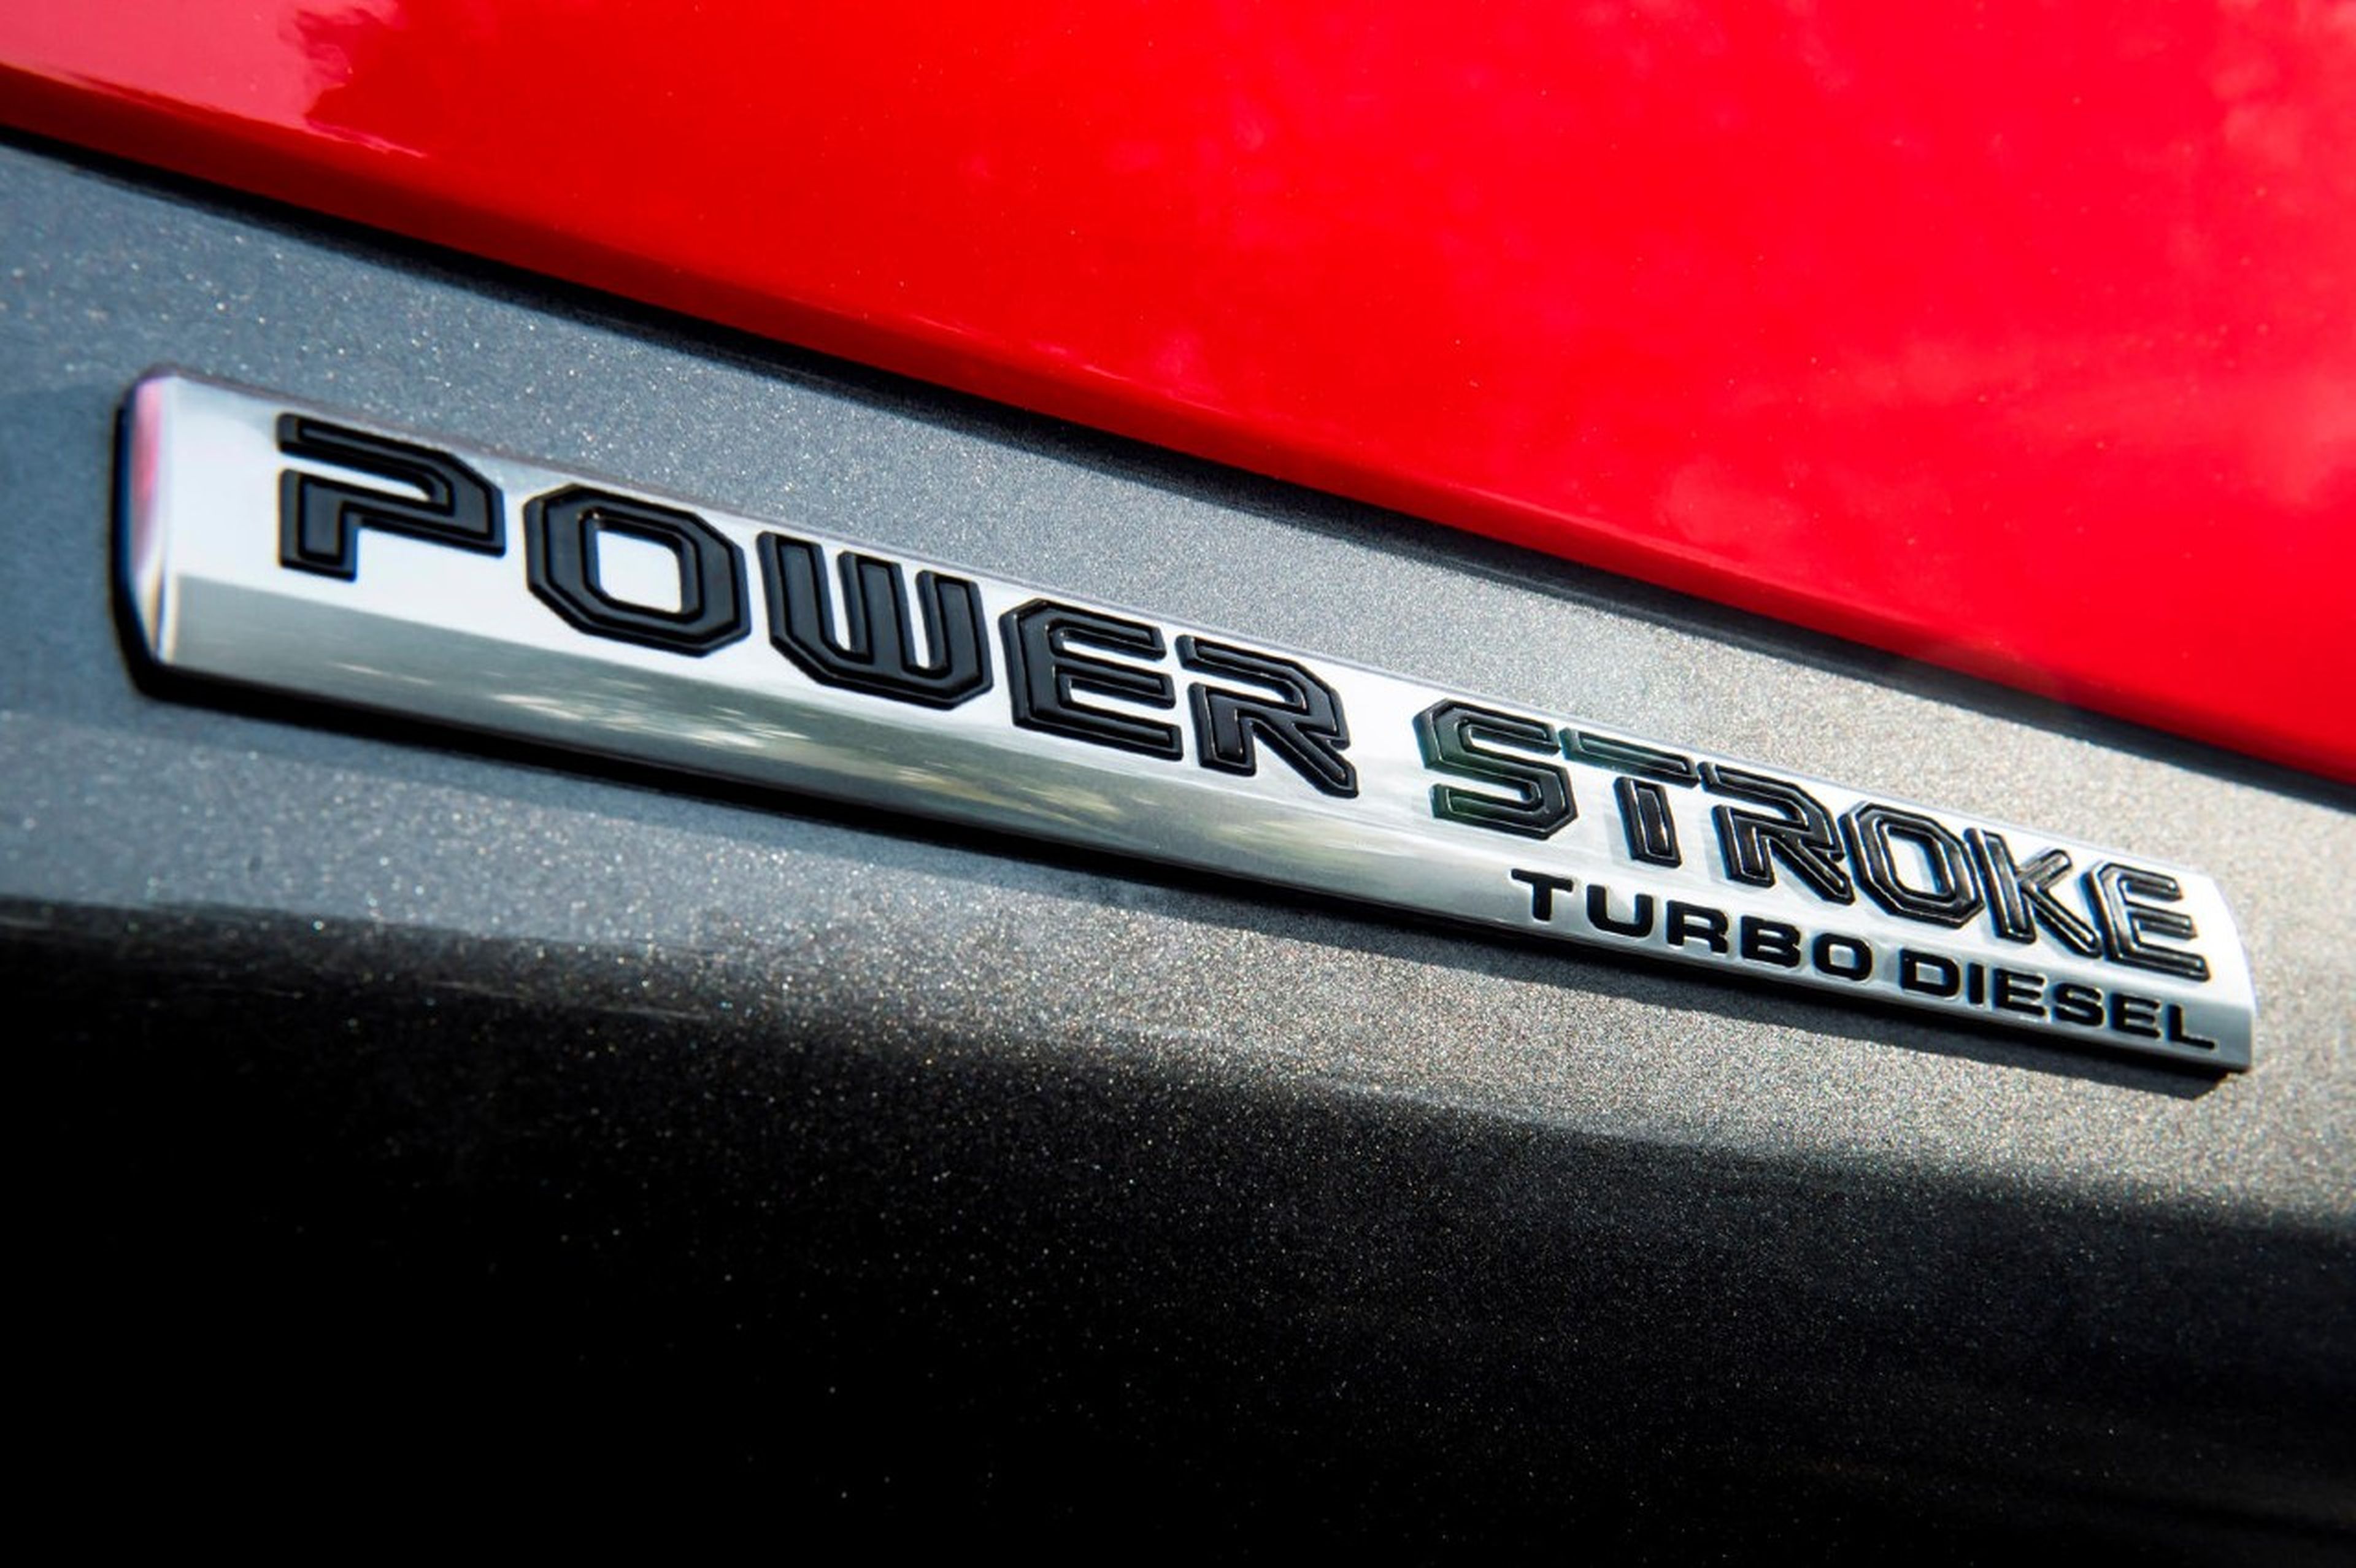 Ford F-150 Power Stroke